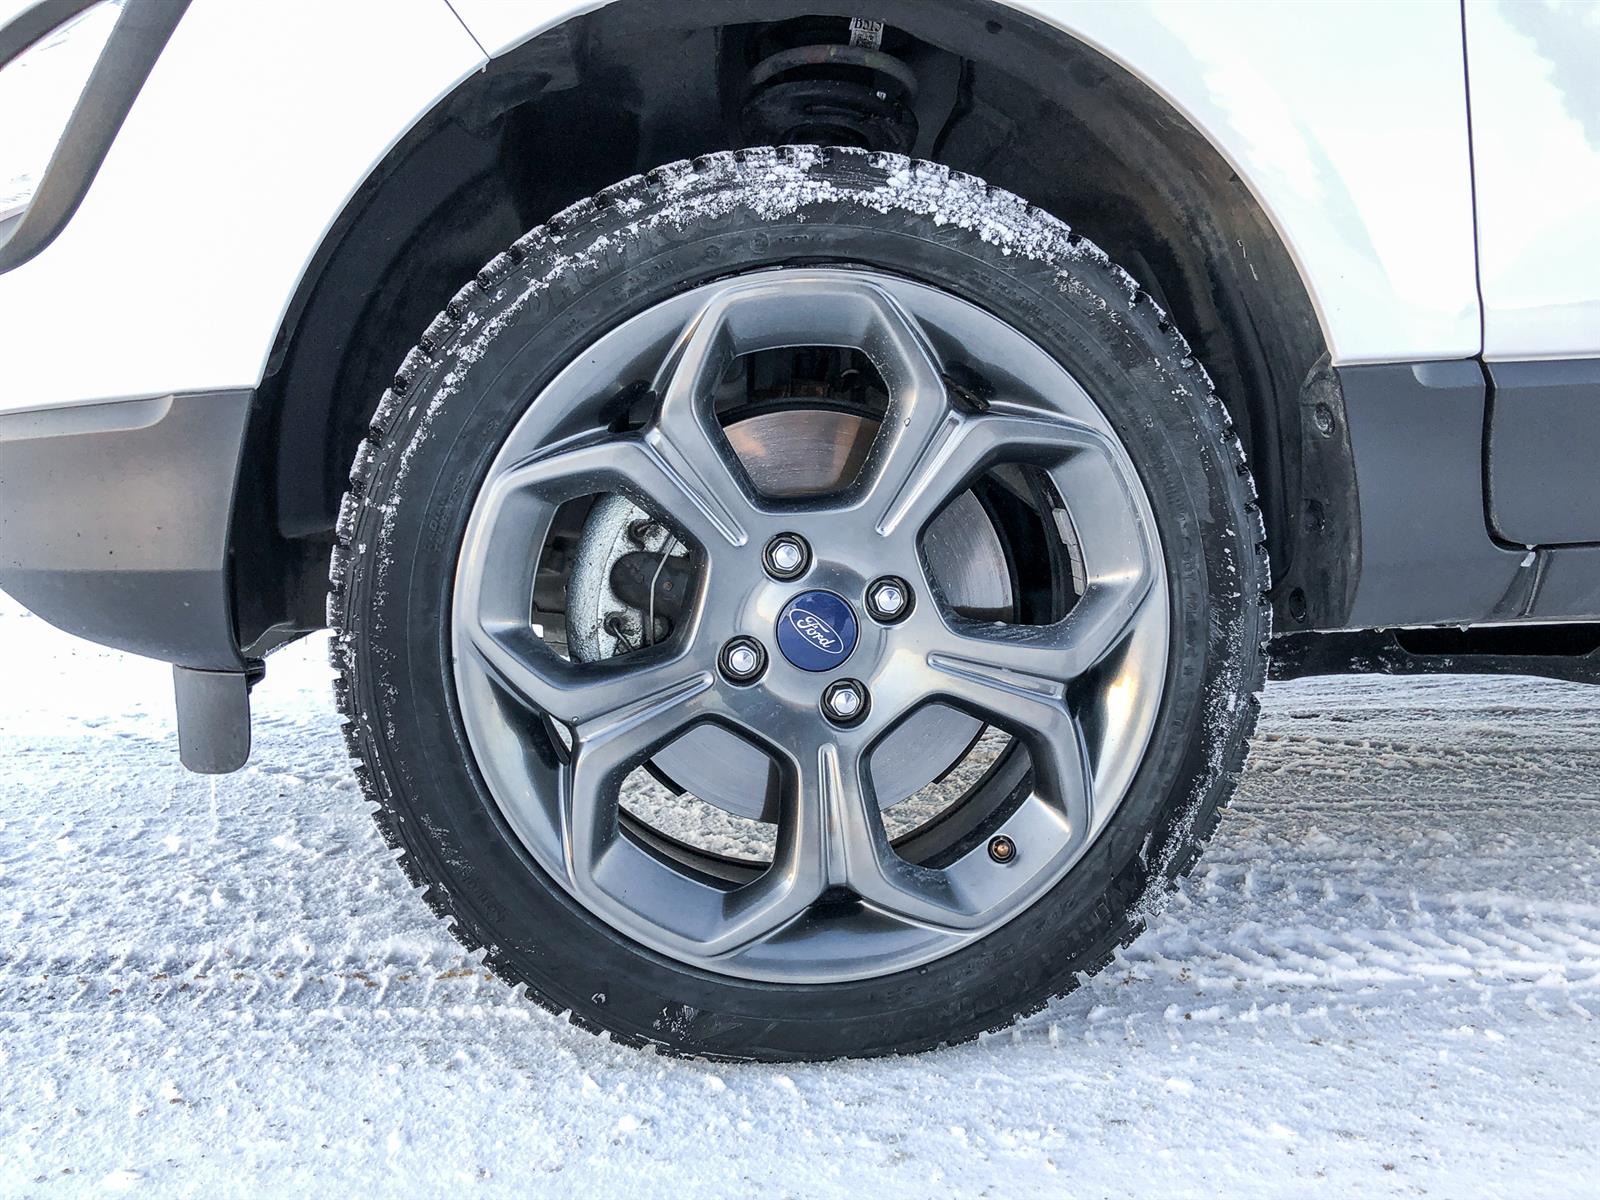 2018 Ford EcoSport SES | 2.0L I4 | 4WD | NAV | REVERSE CAMERA & SENSING SYSTEM